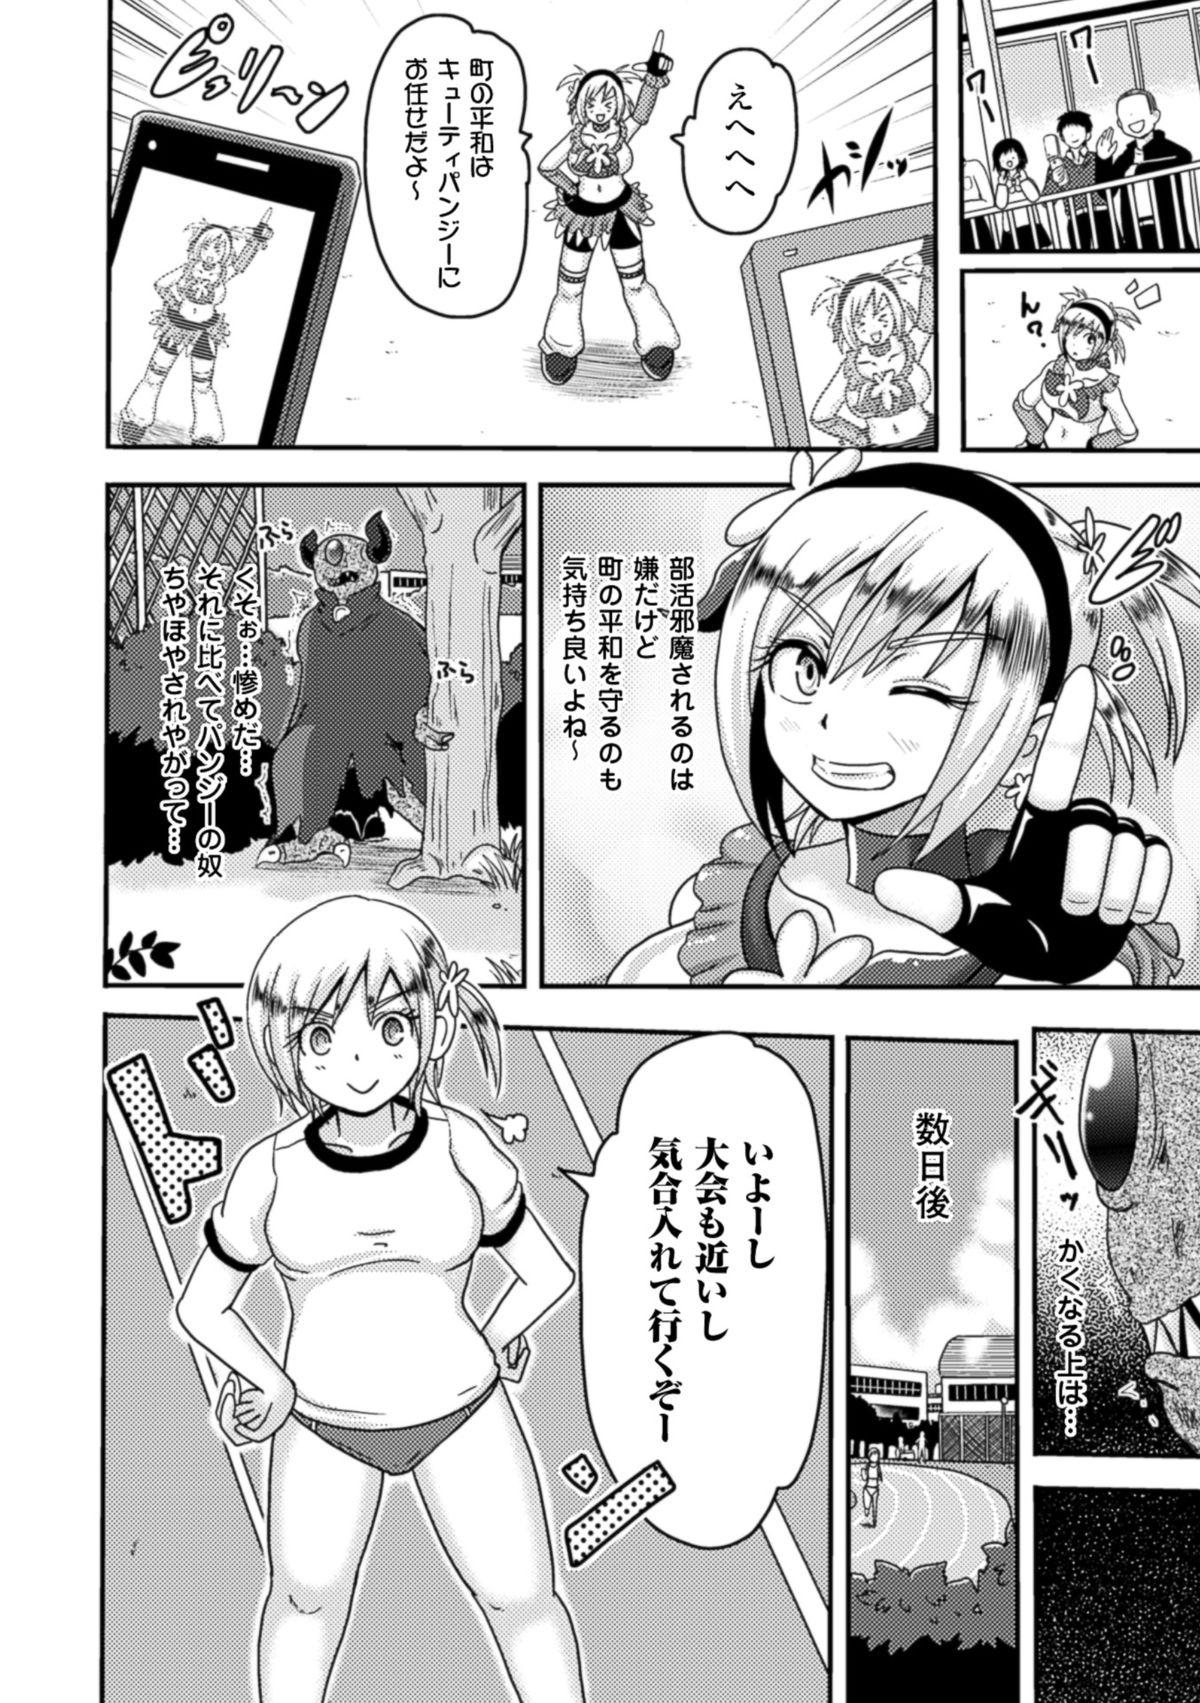 Classroom Akuochisukii Sensei no Heroine Haiboku no Houteishiki - Equation of Heroine's defeat by Mr. Akuochisukii Nasty - Page 6